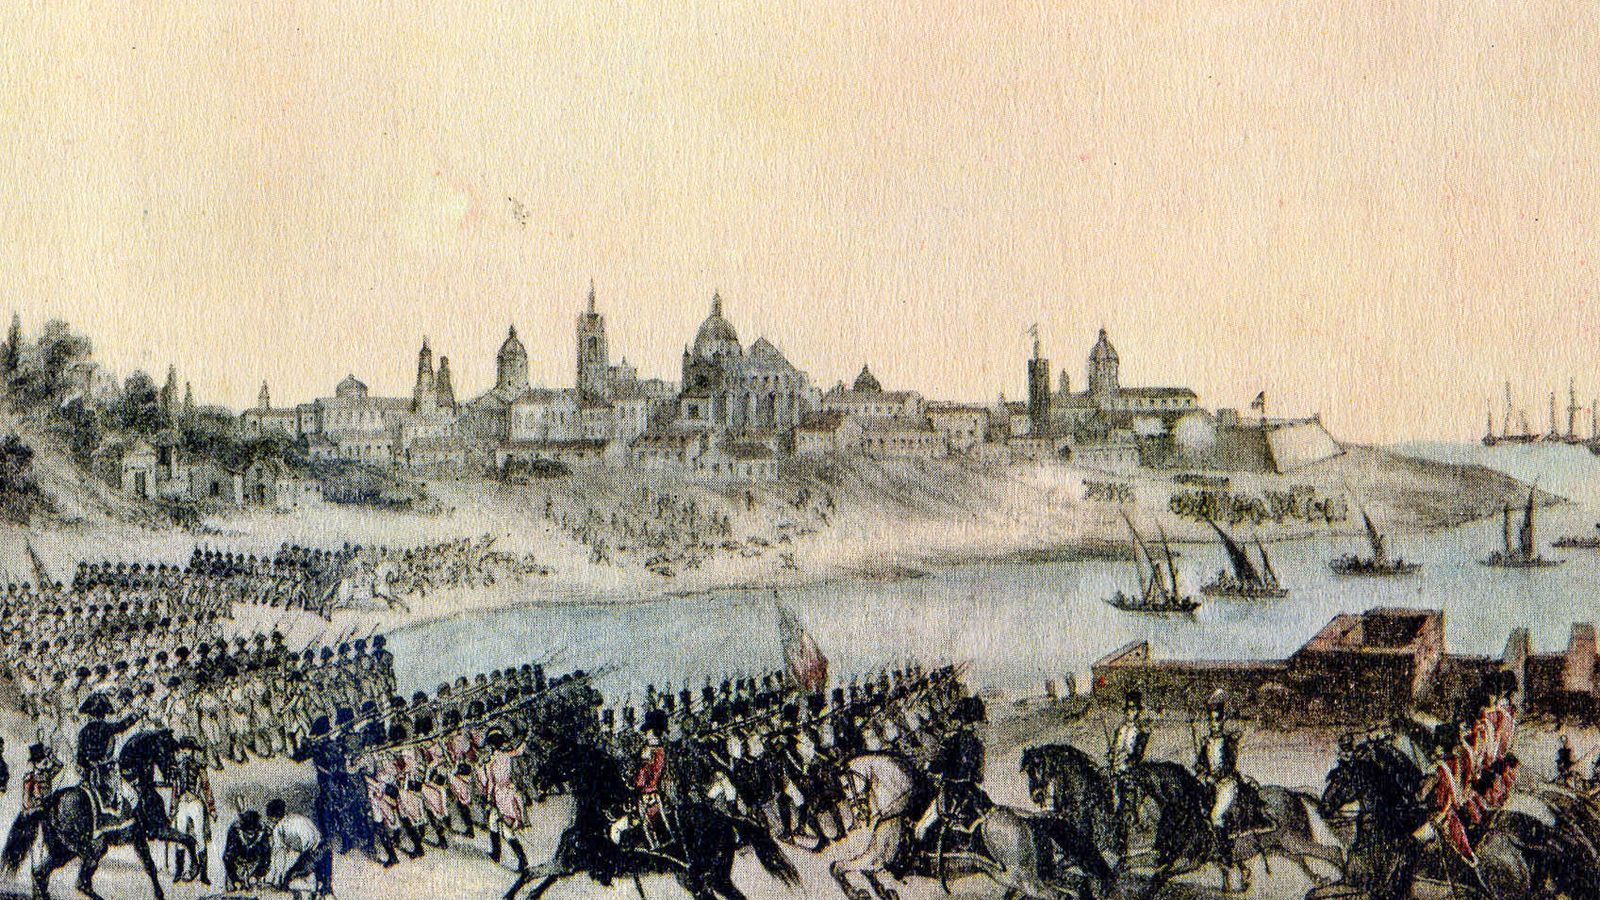 Foto: Invasiones inglesas a Buenos Aires', pintado por Madrid Martínez en 1807.